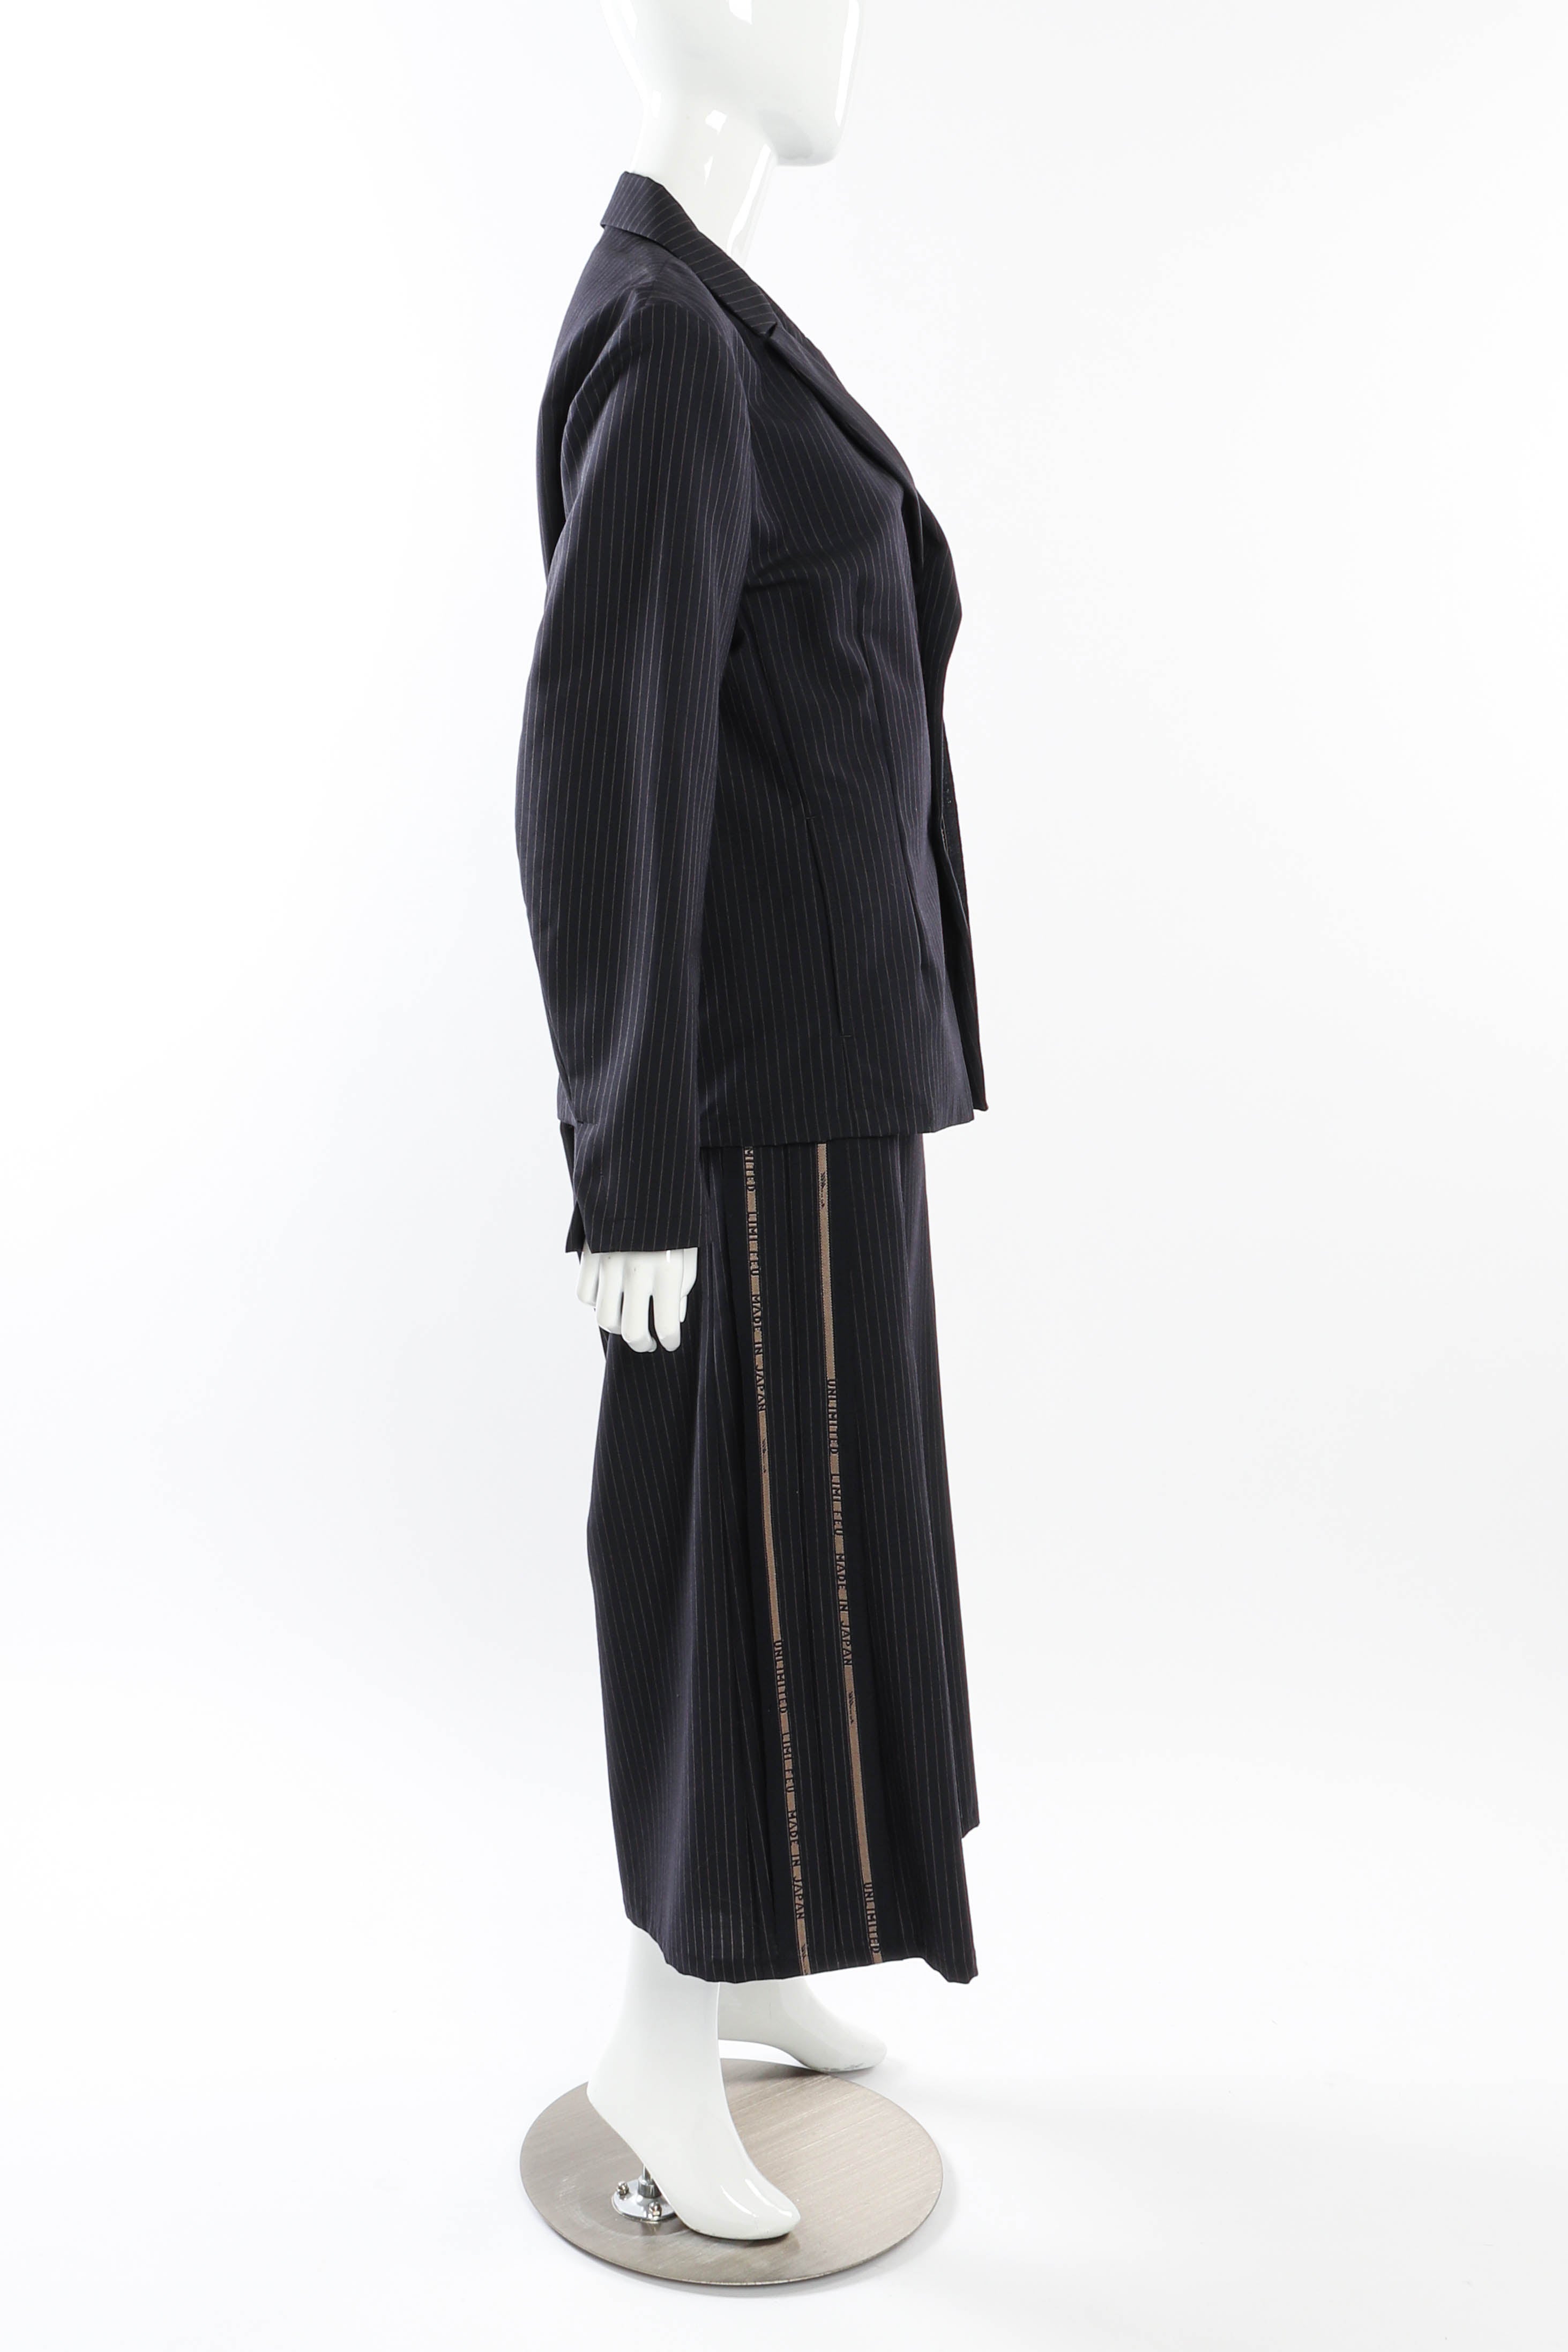 Limi Feu Pinstripe Wool Suit side on mannequin @recessla